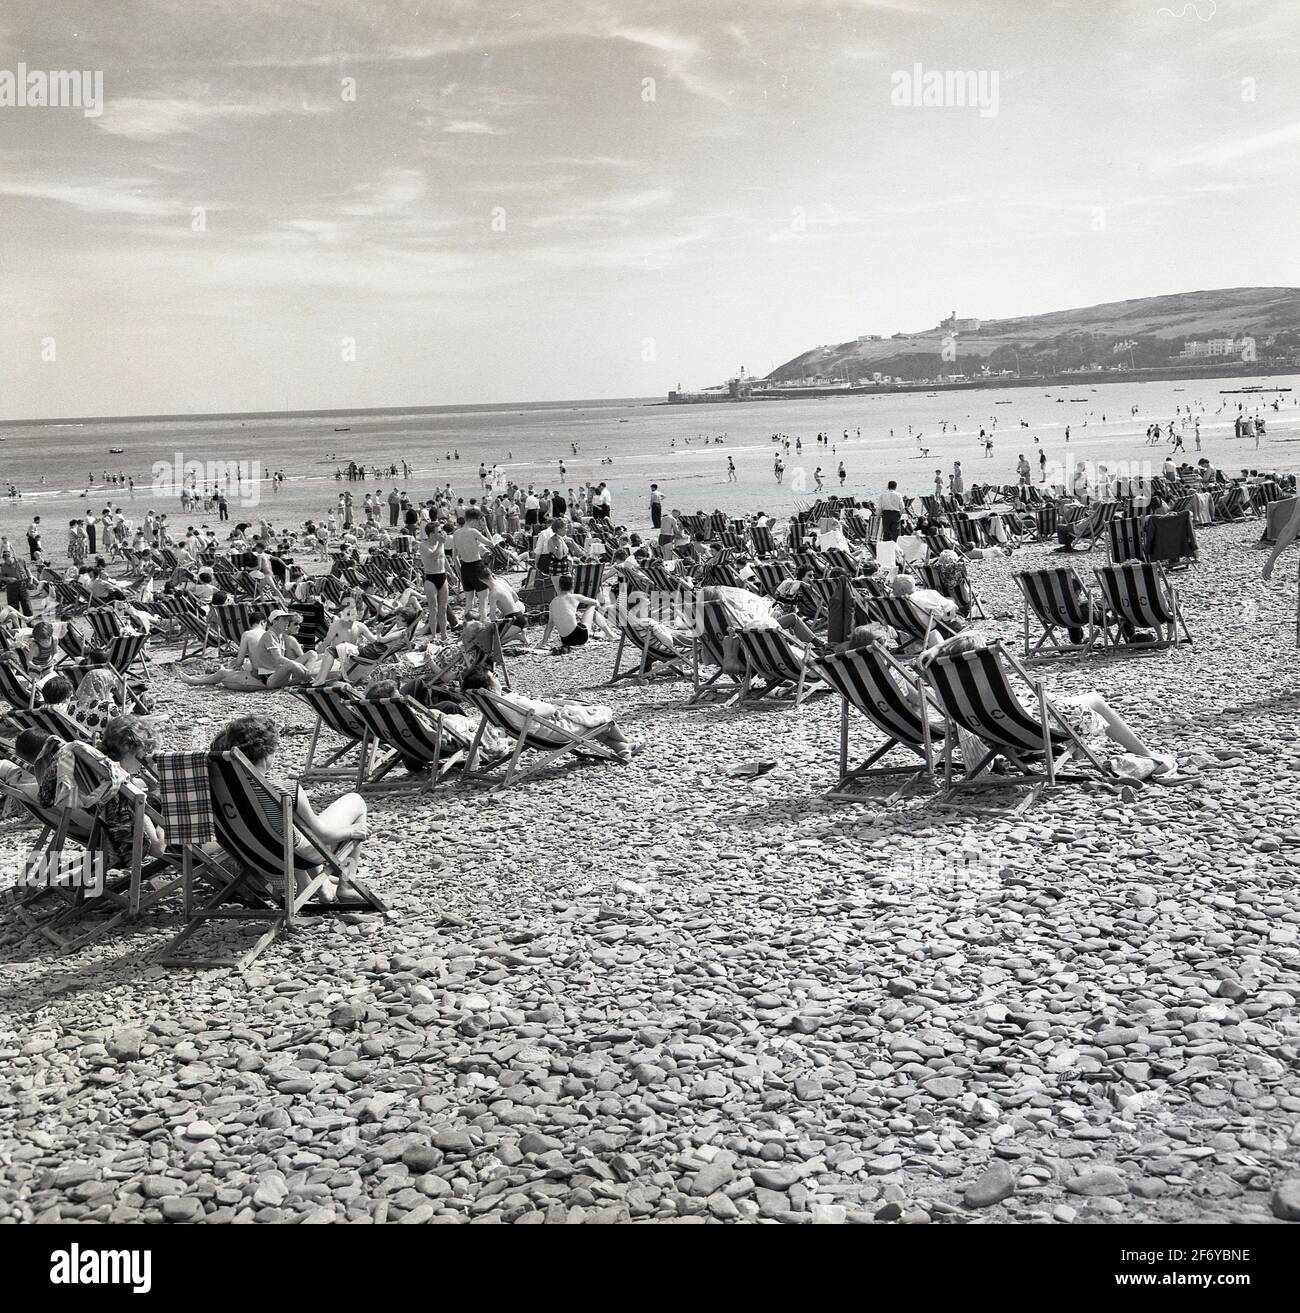 In den 1950er Jahren, historisch, an der Küste, sitzen Urlauber in  Liegestühlen an einem steinigen Strand, England, Großbritannien. Der  einfache Liegestuhl ist eine Ikone der britischen Küste und das Entspannen  in einem